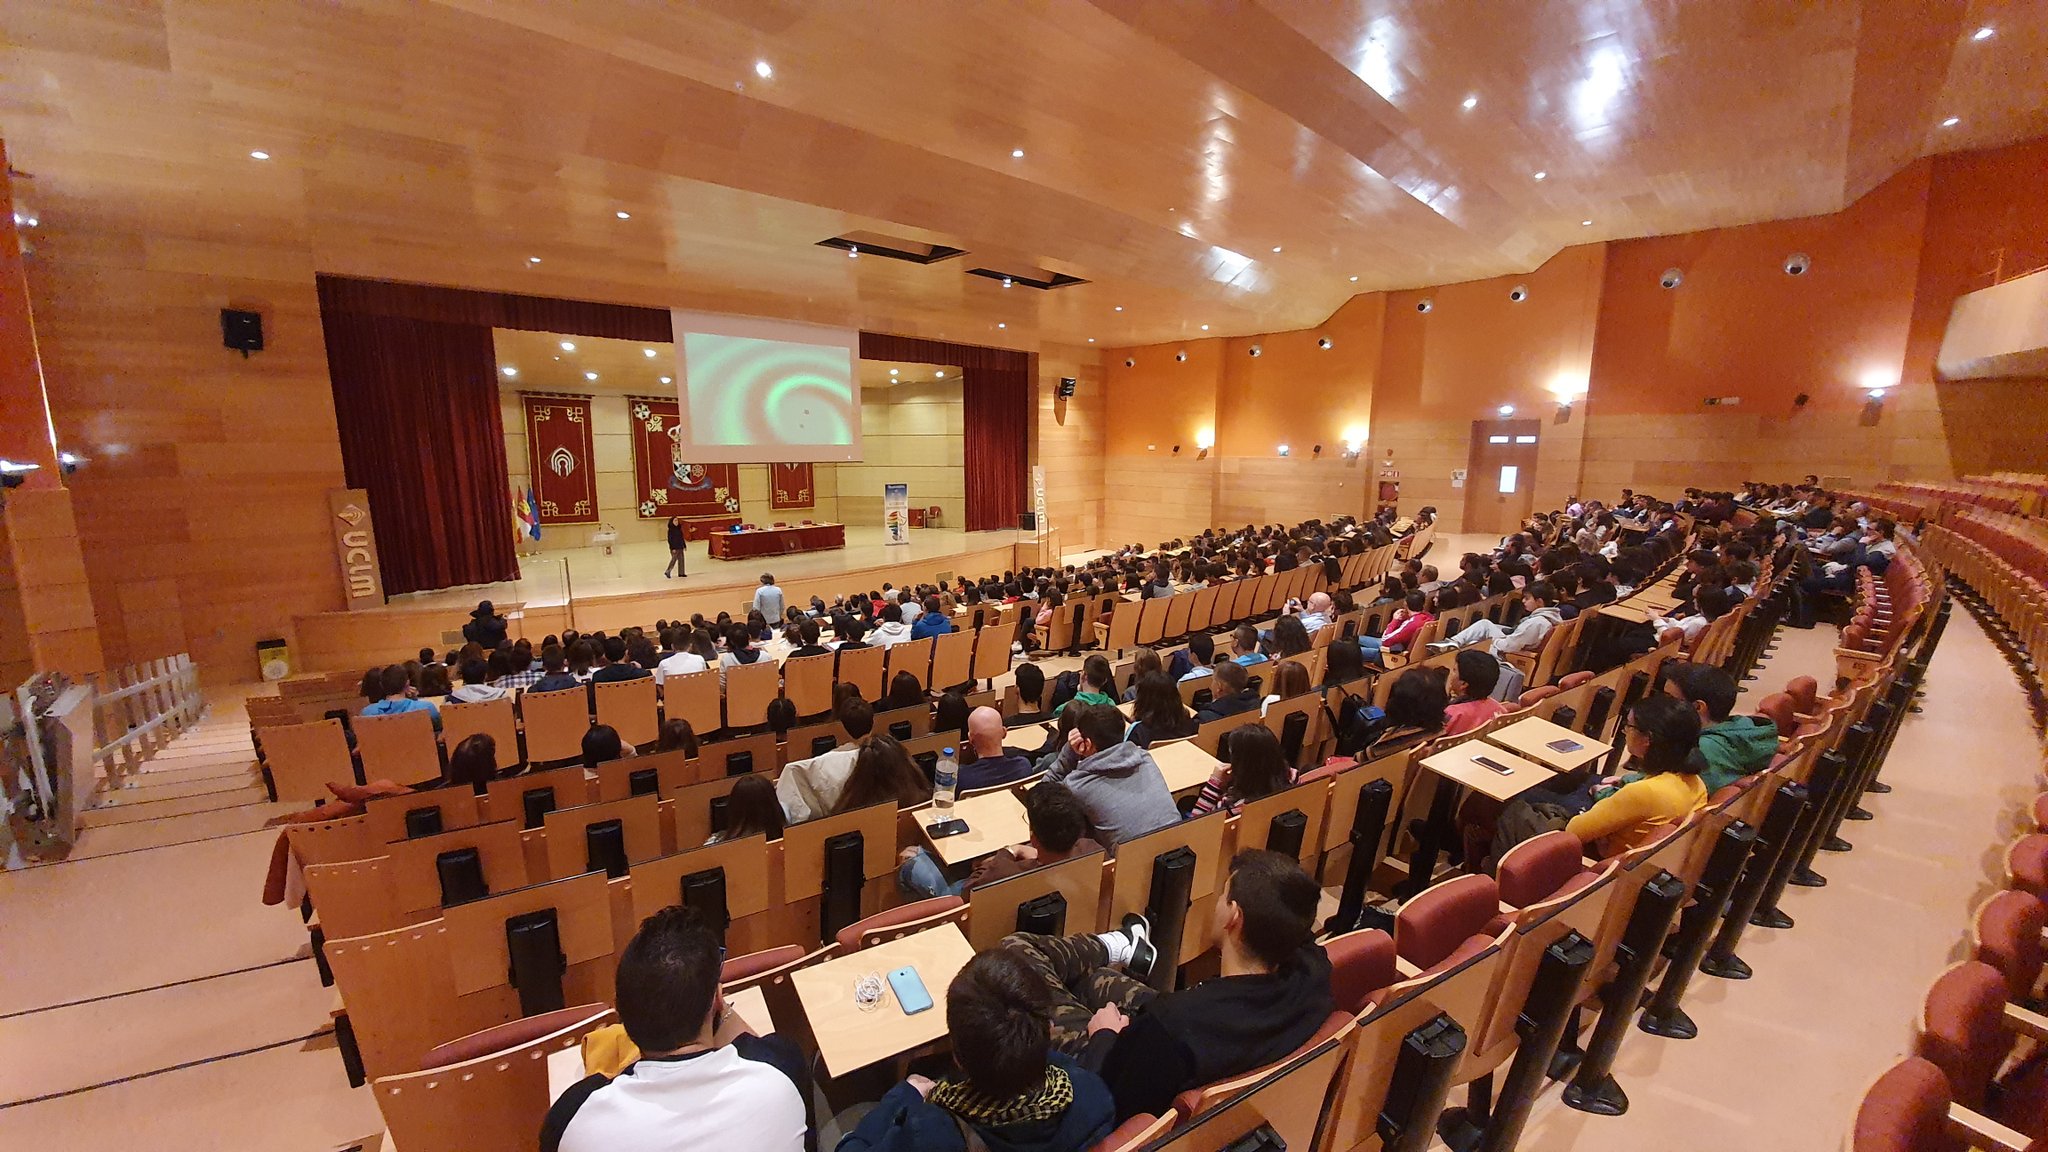 Cerca de 500 alumnos de Bachillerato de la provincia de Ciudad Real asistieron a la charla de Alicia Sintes